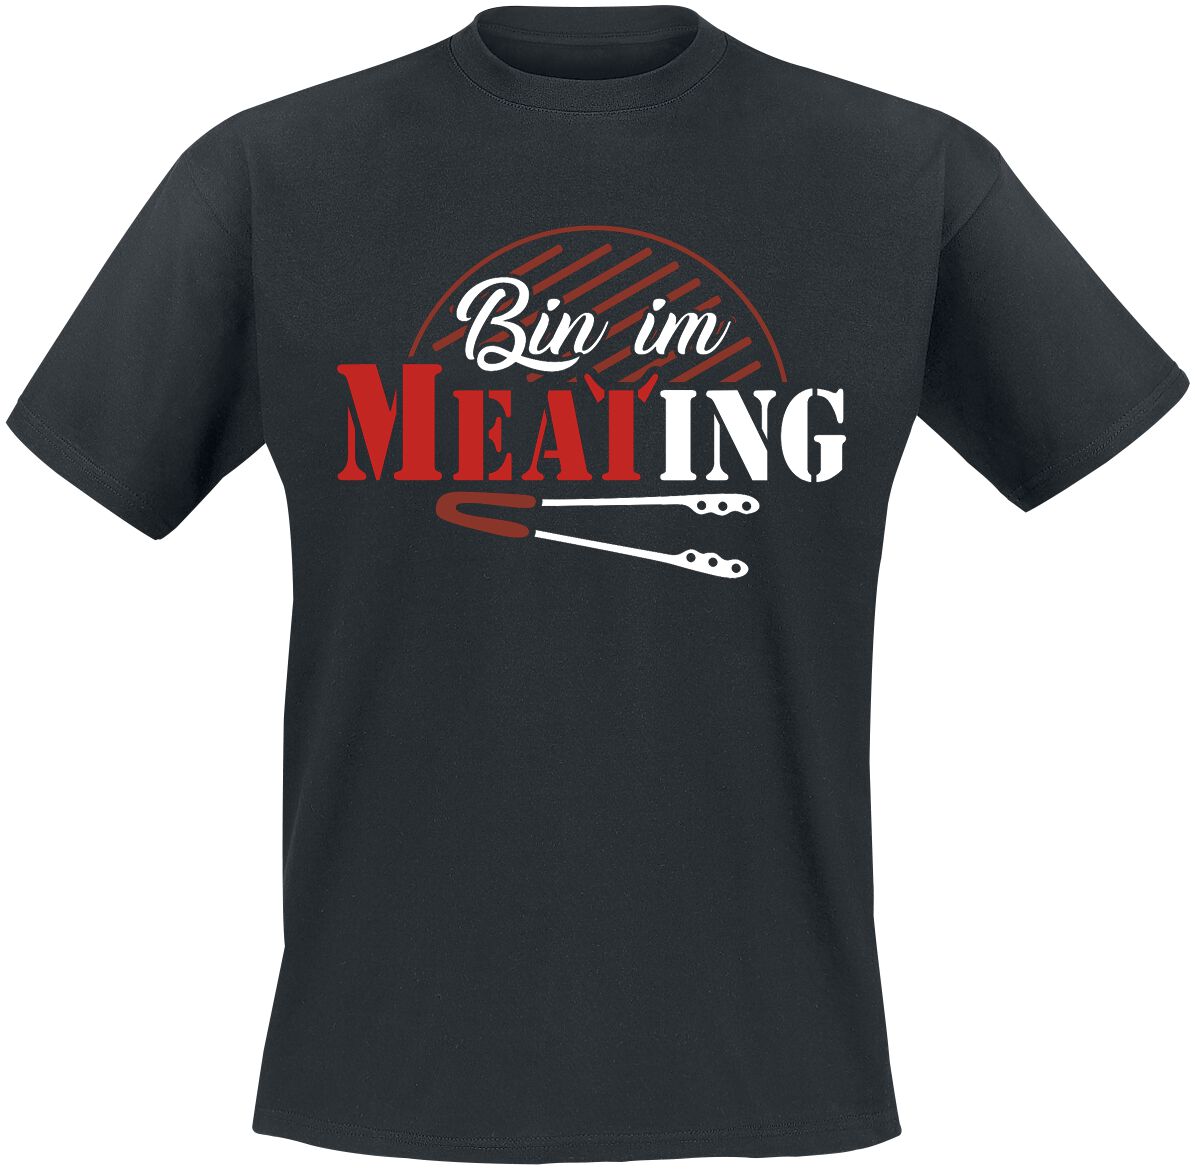 Food T-Shirt - Bin im Meating - S bis 5XL - für Männer - Größe XXL - schwarz